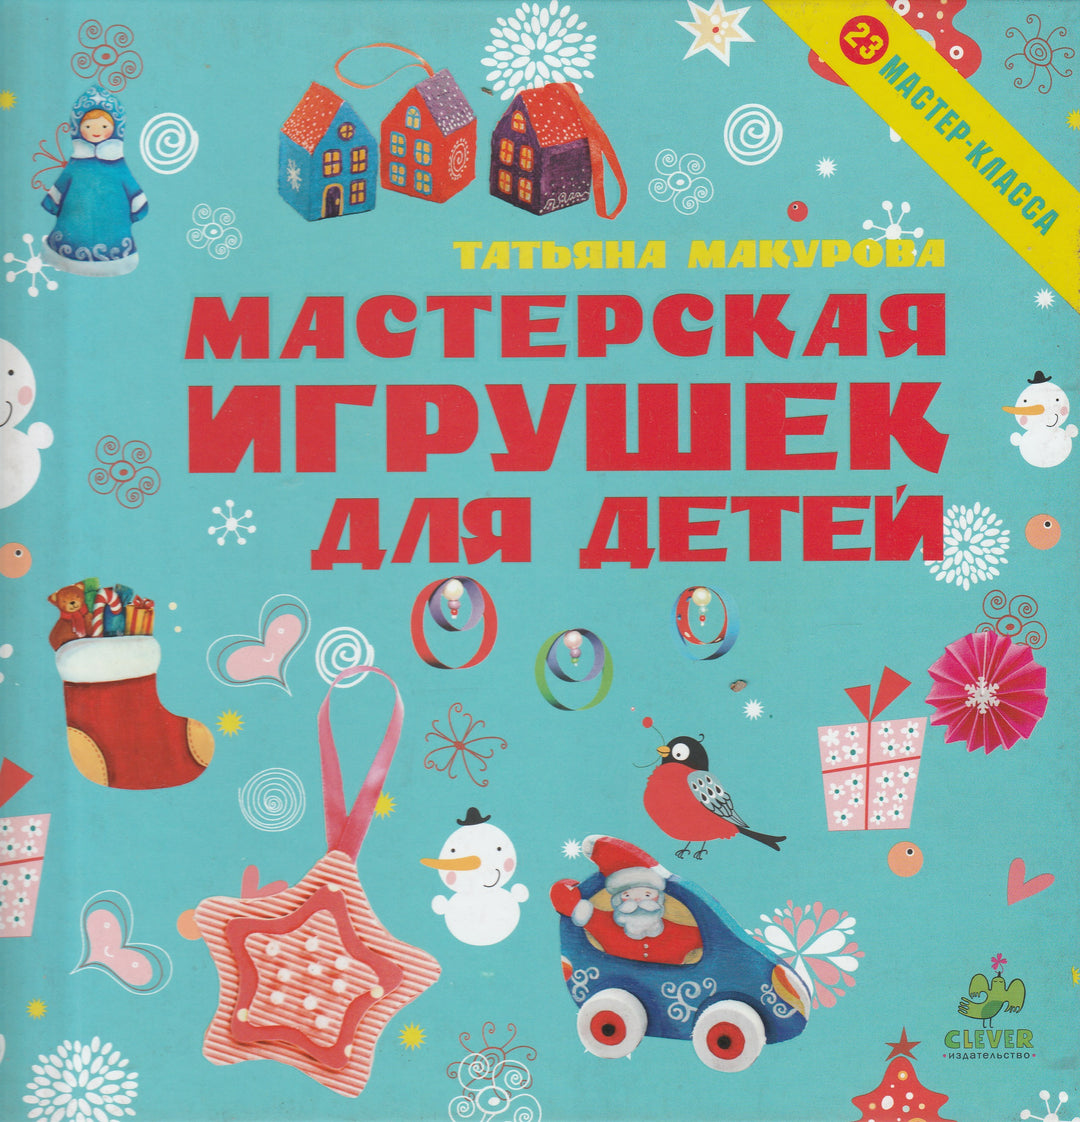 Мастерская игрушек для детей-Макурова Т.-Клевер Медиа групп-Lookomorie